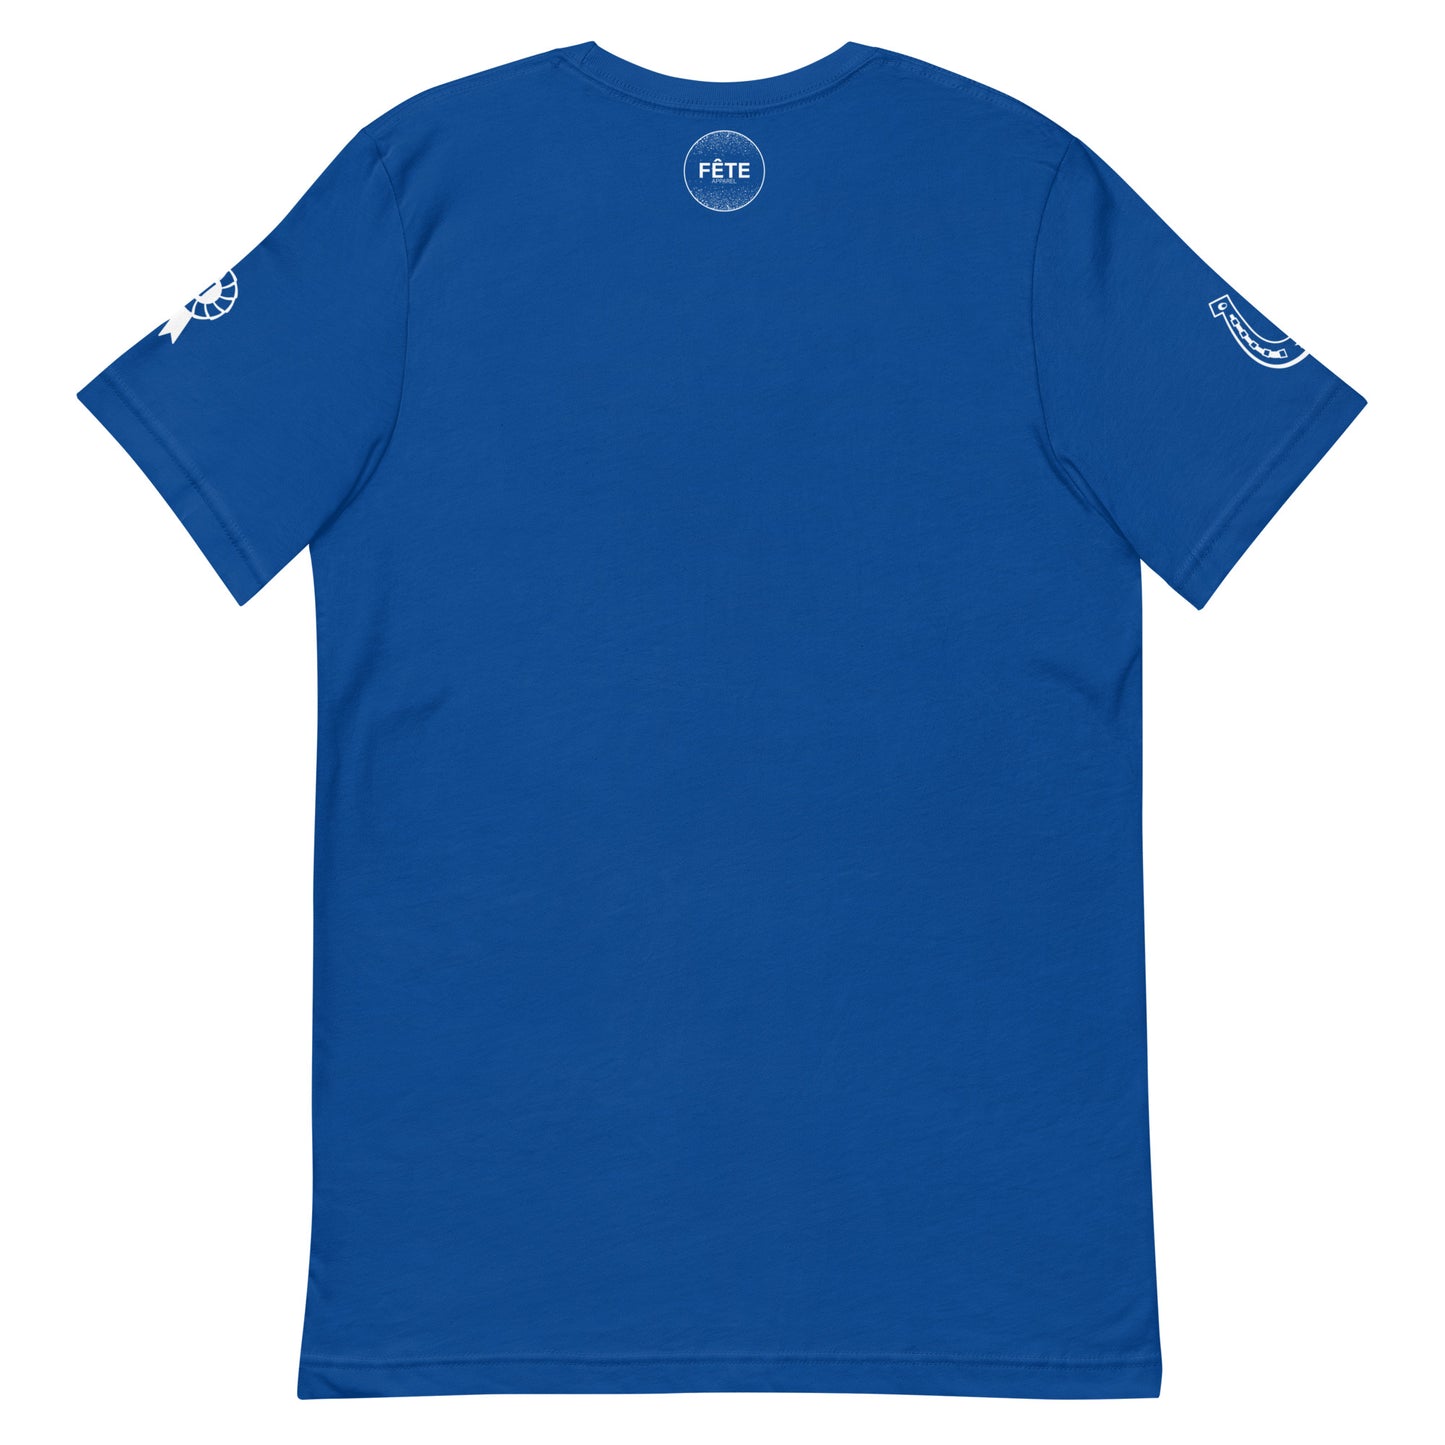 Men's T-Shirt "FEELING BLUE" in Classic White on Royal Blue